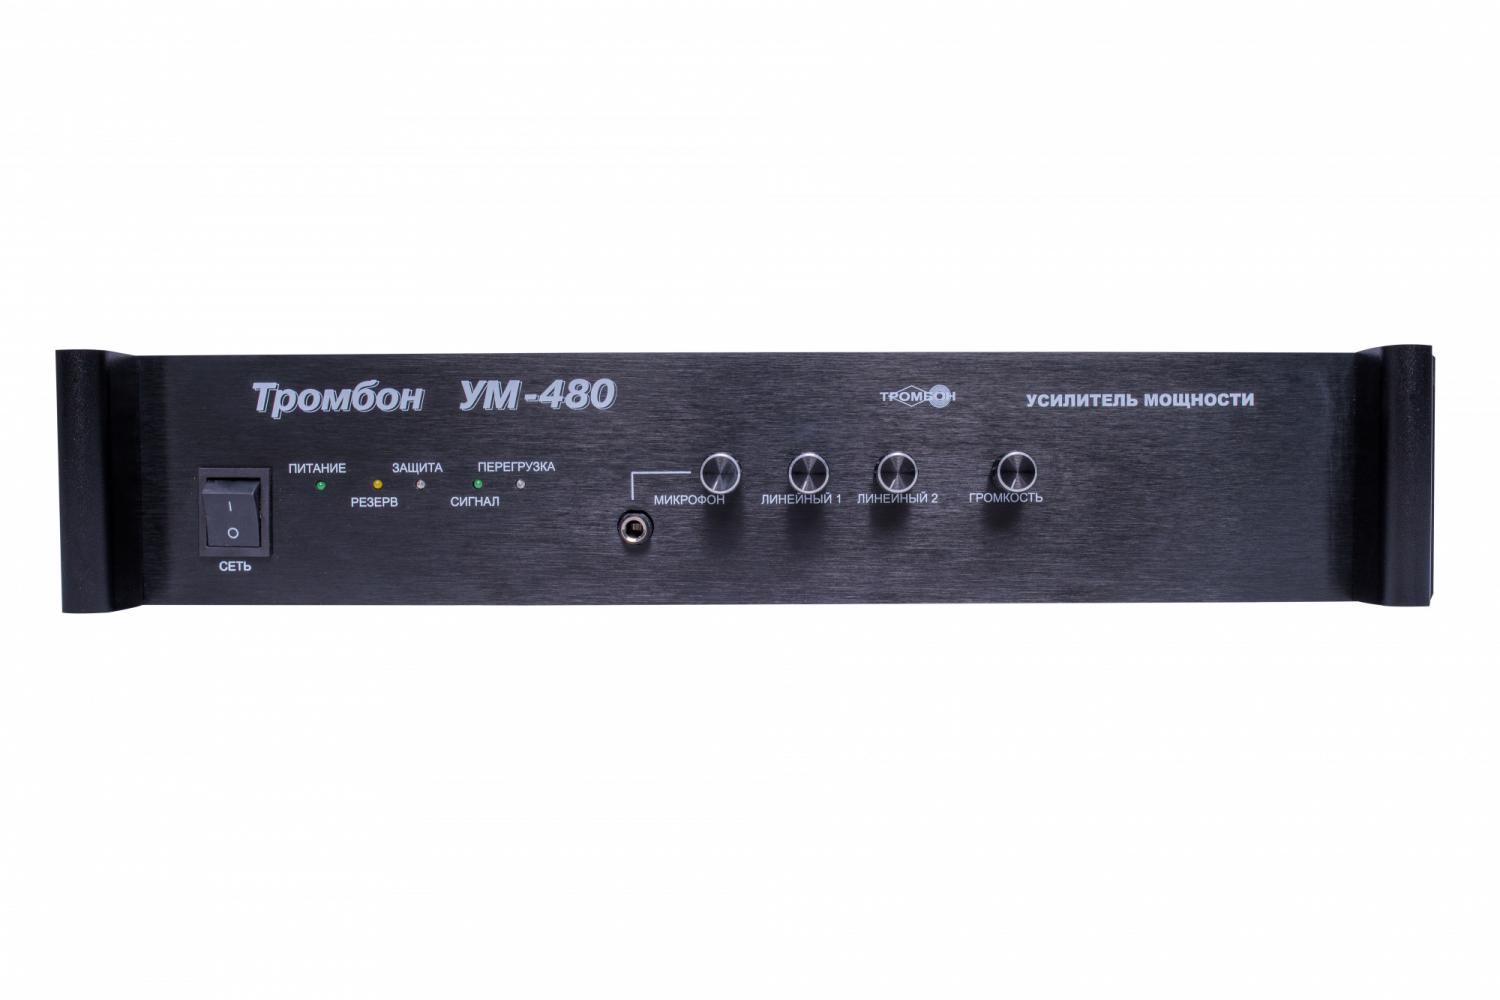 Все Тромбон УМ4-480 усилитель мощности видеонаблюдения в магазине Vidos Group